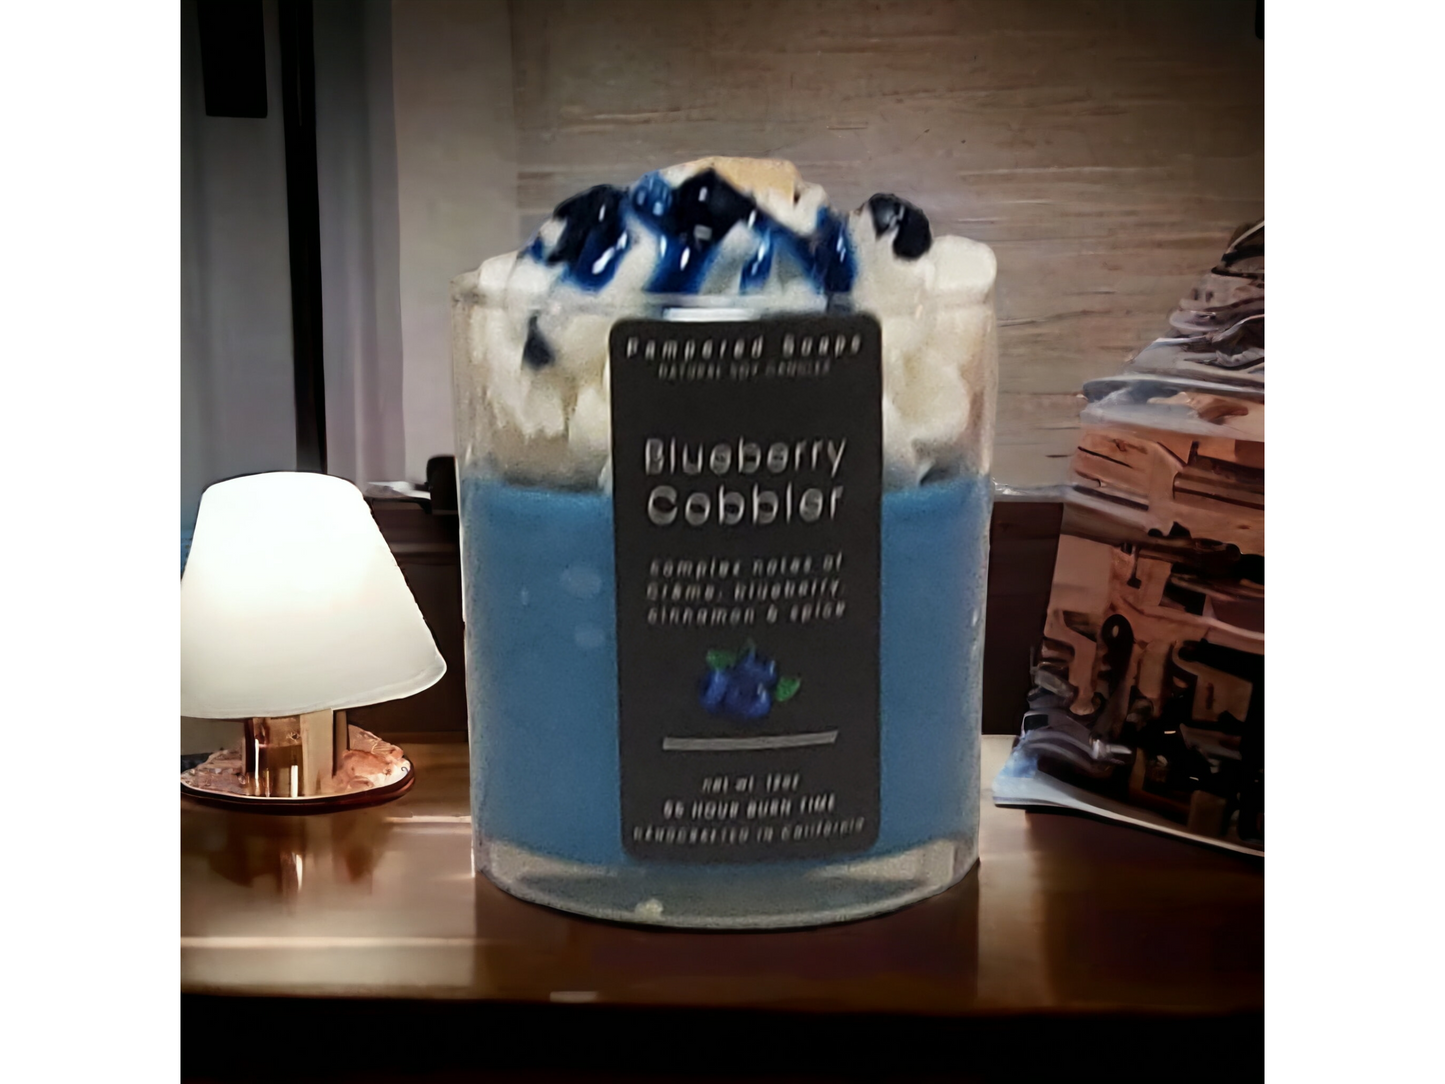 Blueberry Cobbler Dessert Candle Pampered Soaps